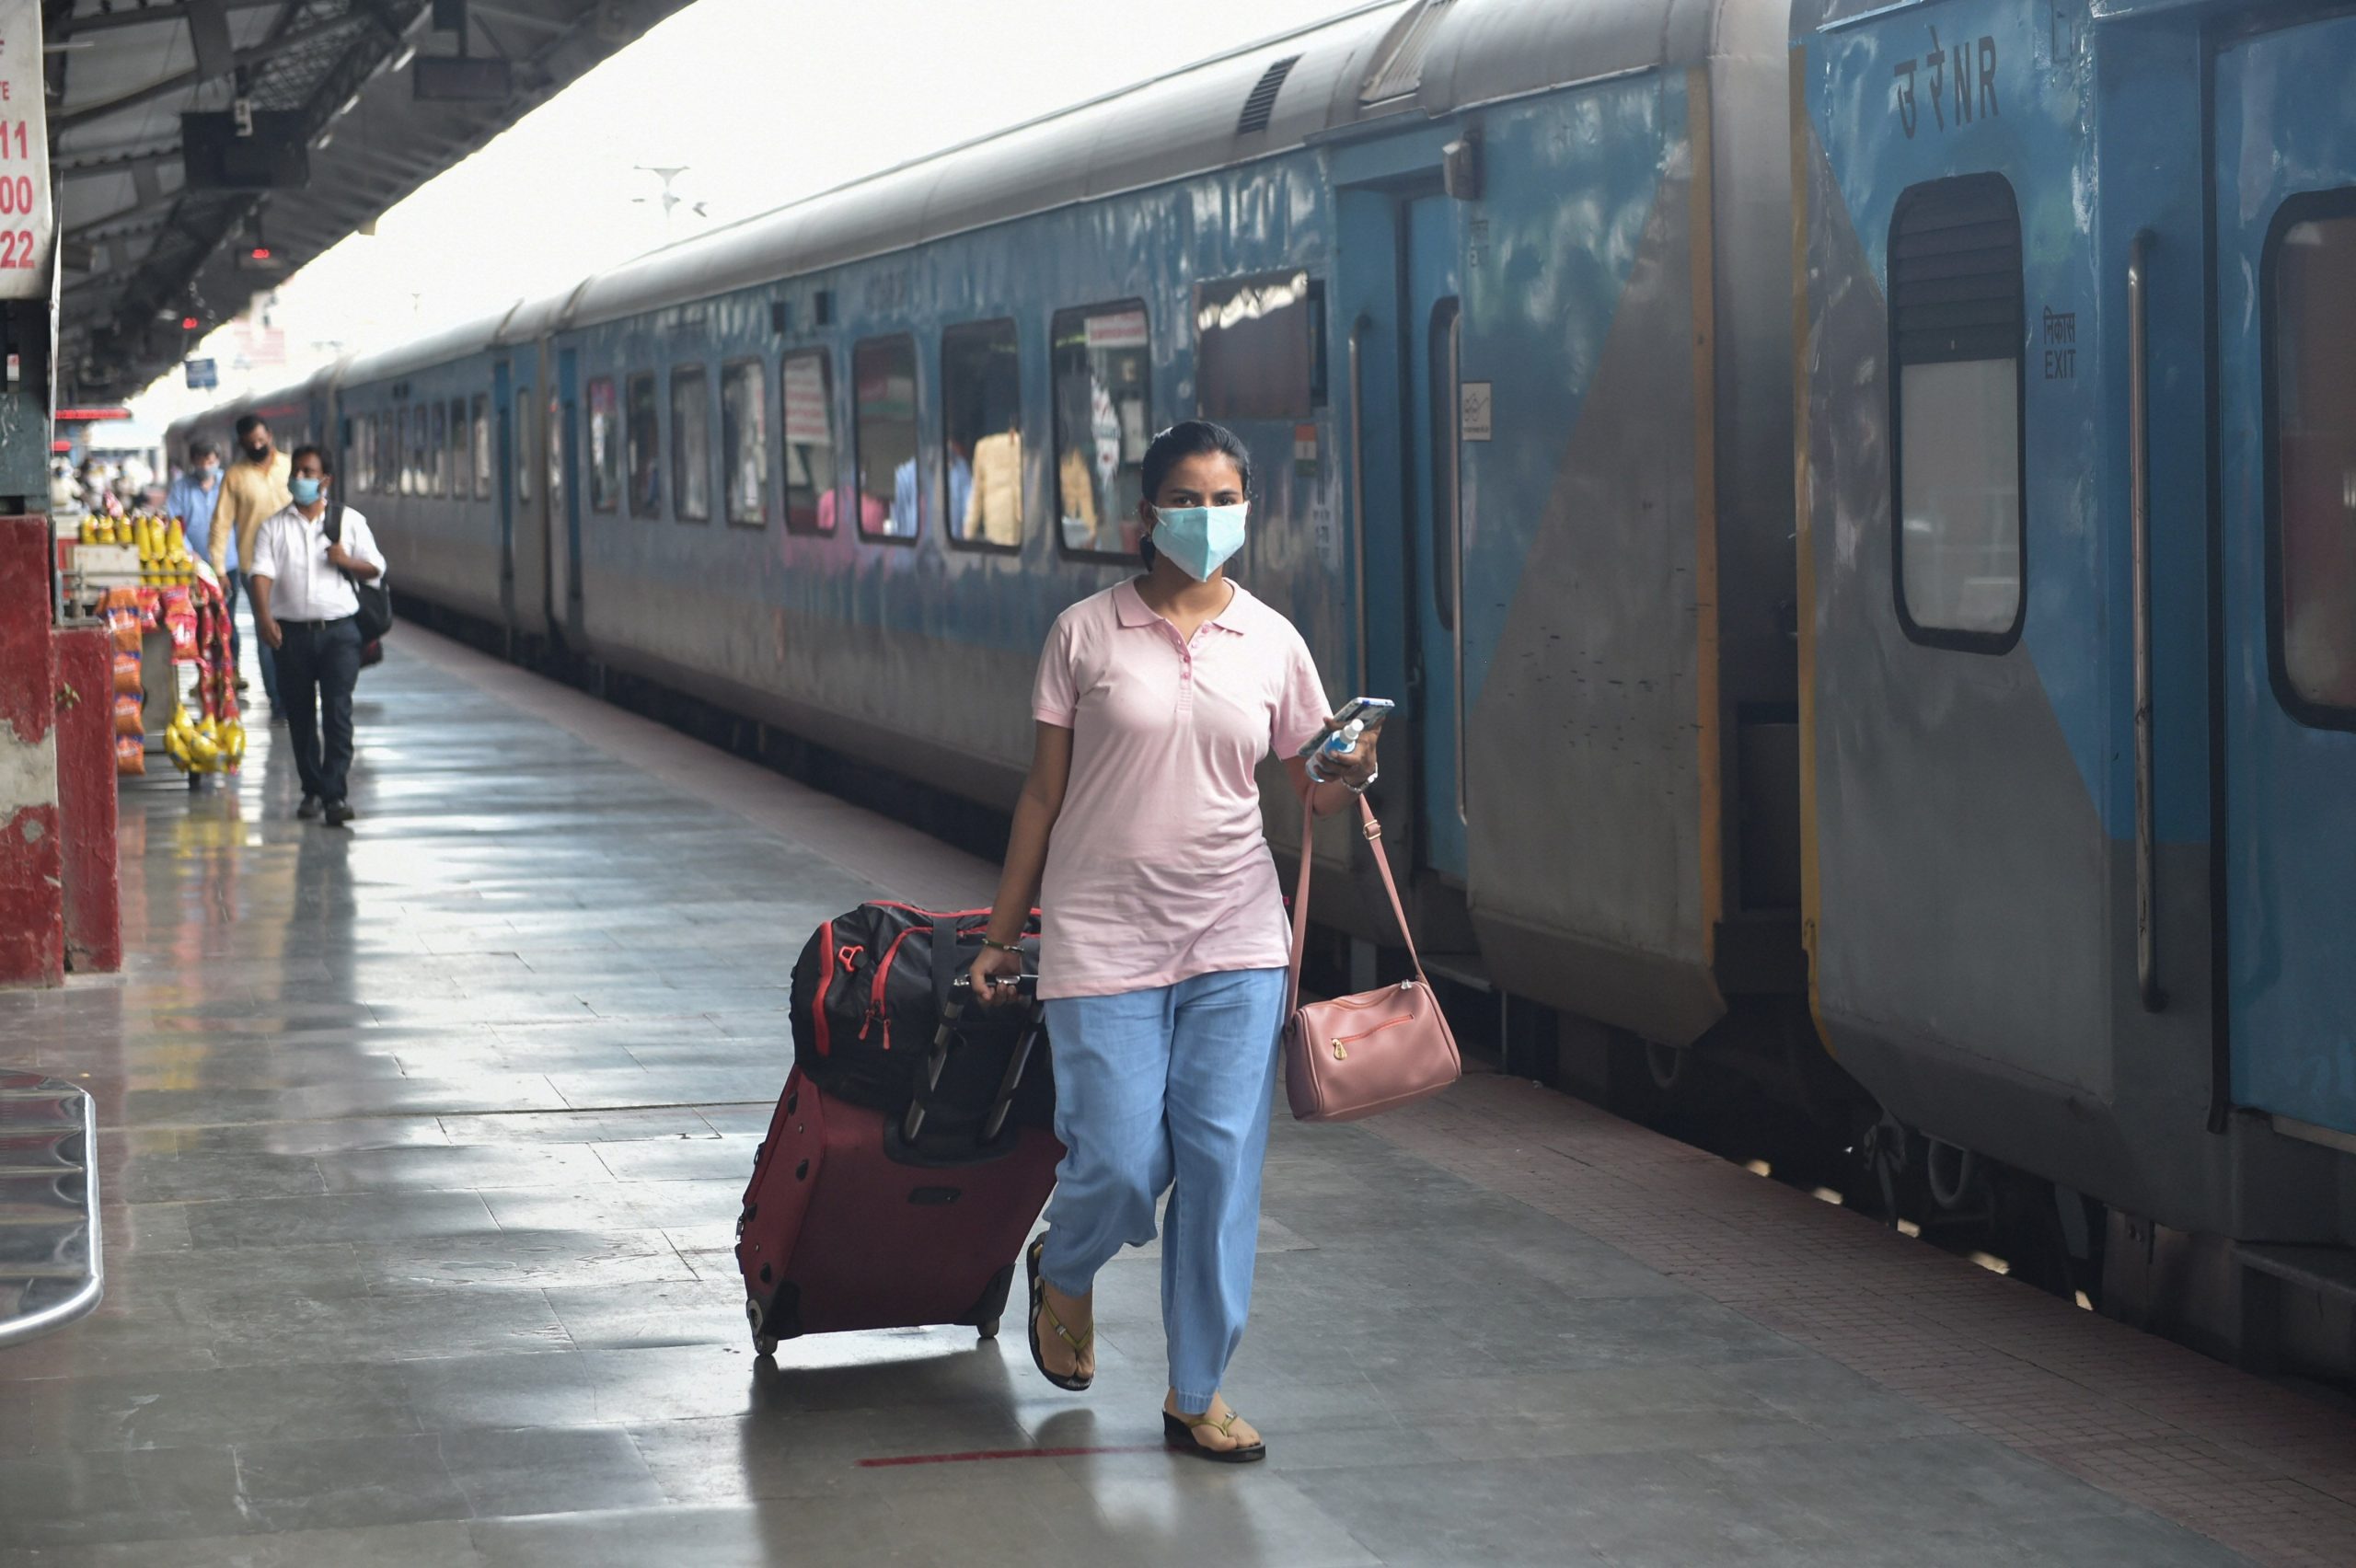 नवरात्रि के मौके पर शुरू होगी दिल्ली कटरा वंदे भारत ट्रेन, 130 किमी रफ्तार वाली ट्रेनों में होंगे केवल एसी कोच